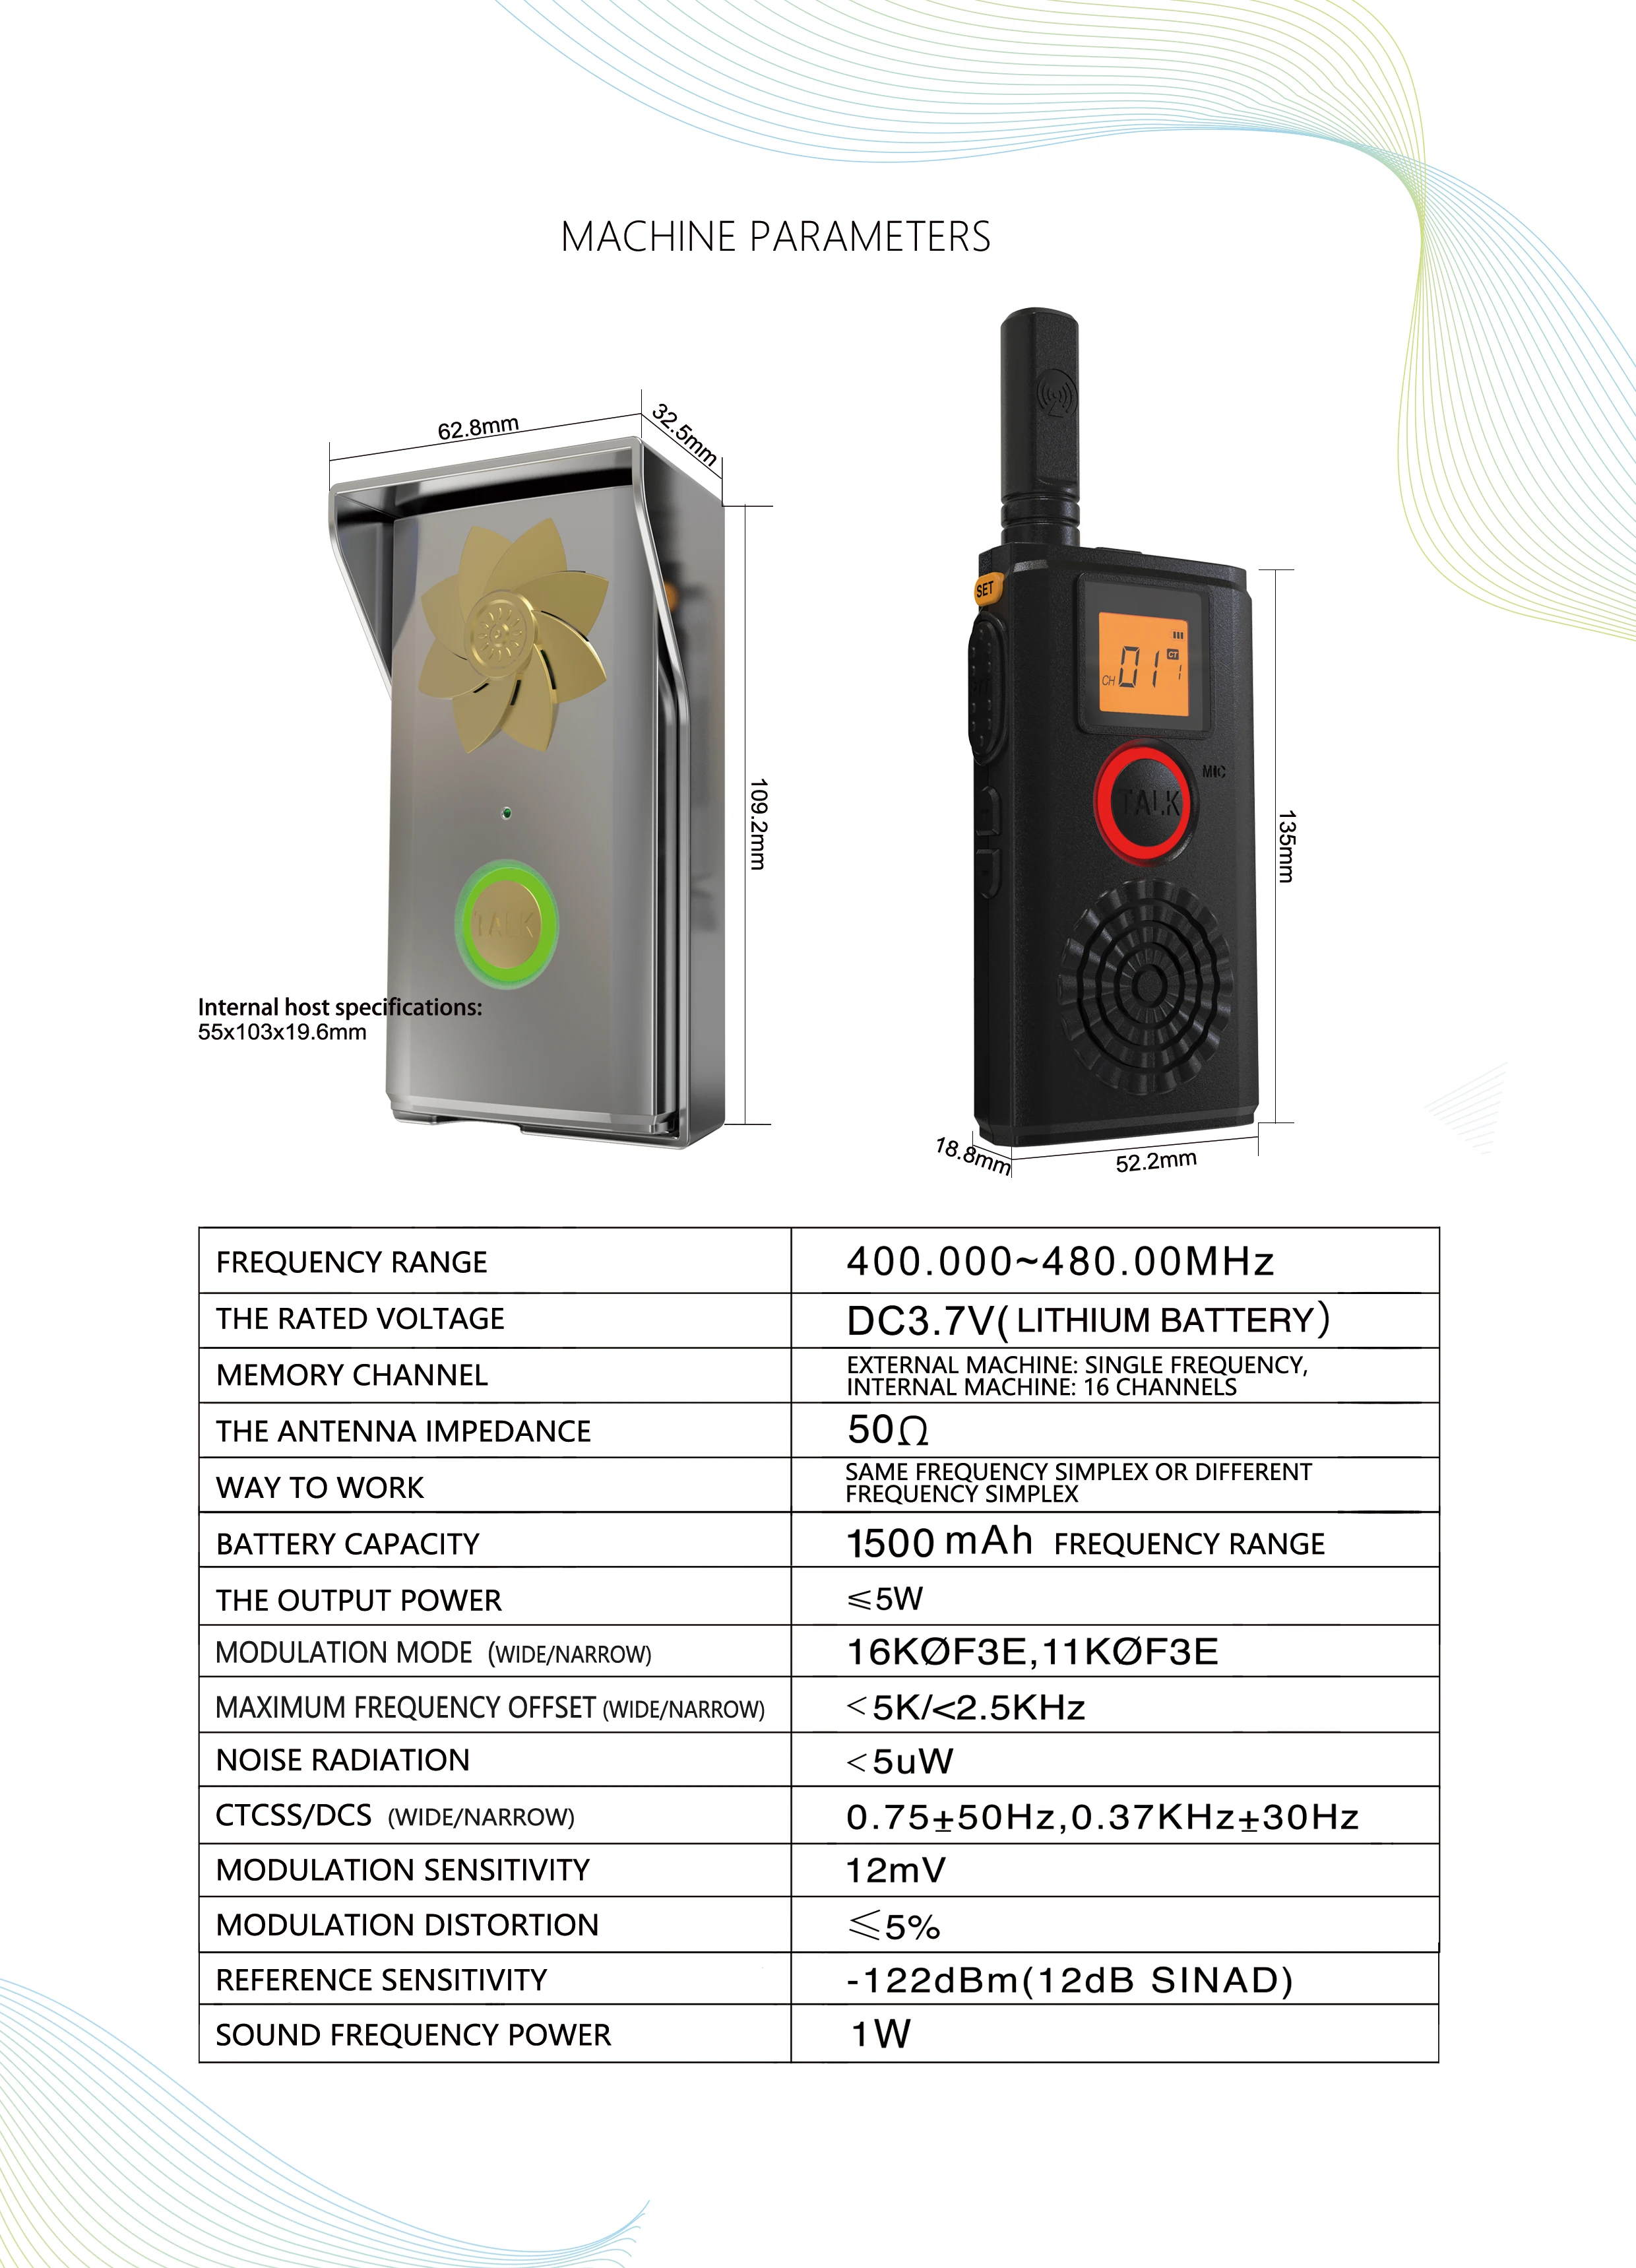 CRONY T-368 Doorbell Walkie Talkie Two Way Radio Professional FM Transceiver with Loudly Doorbell Doorphone